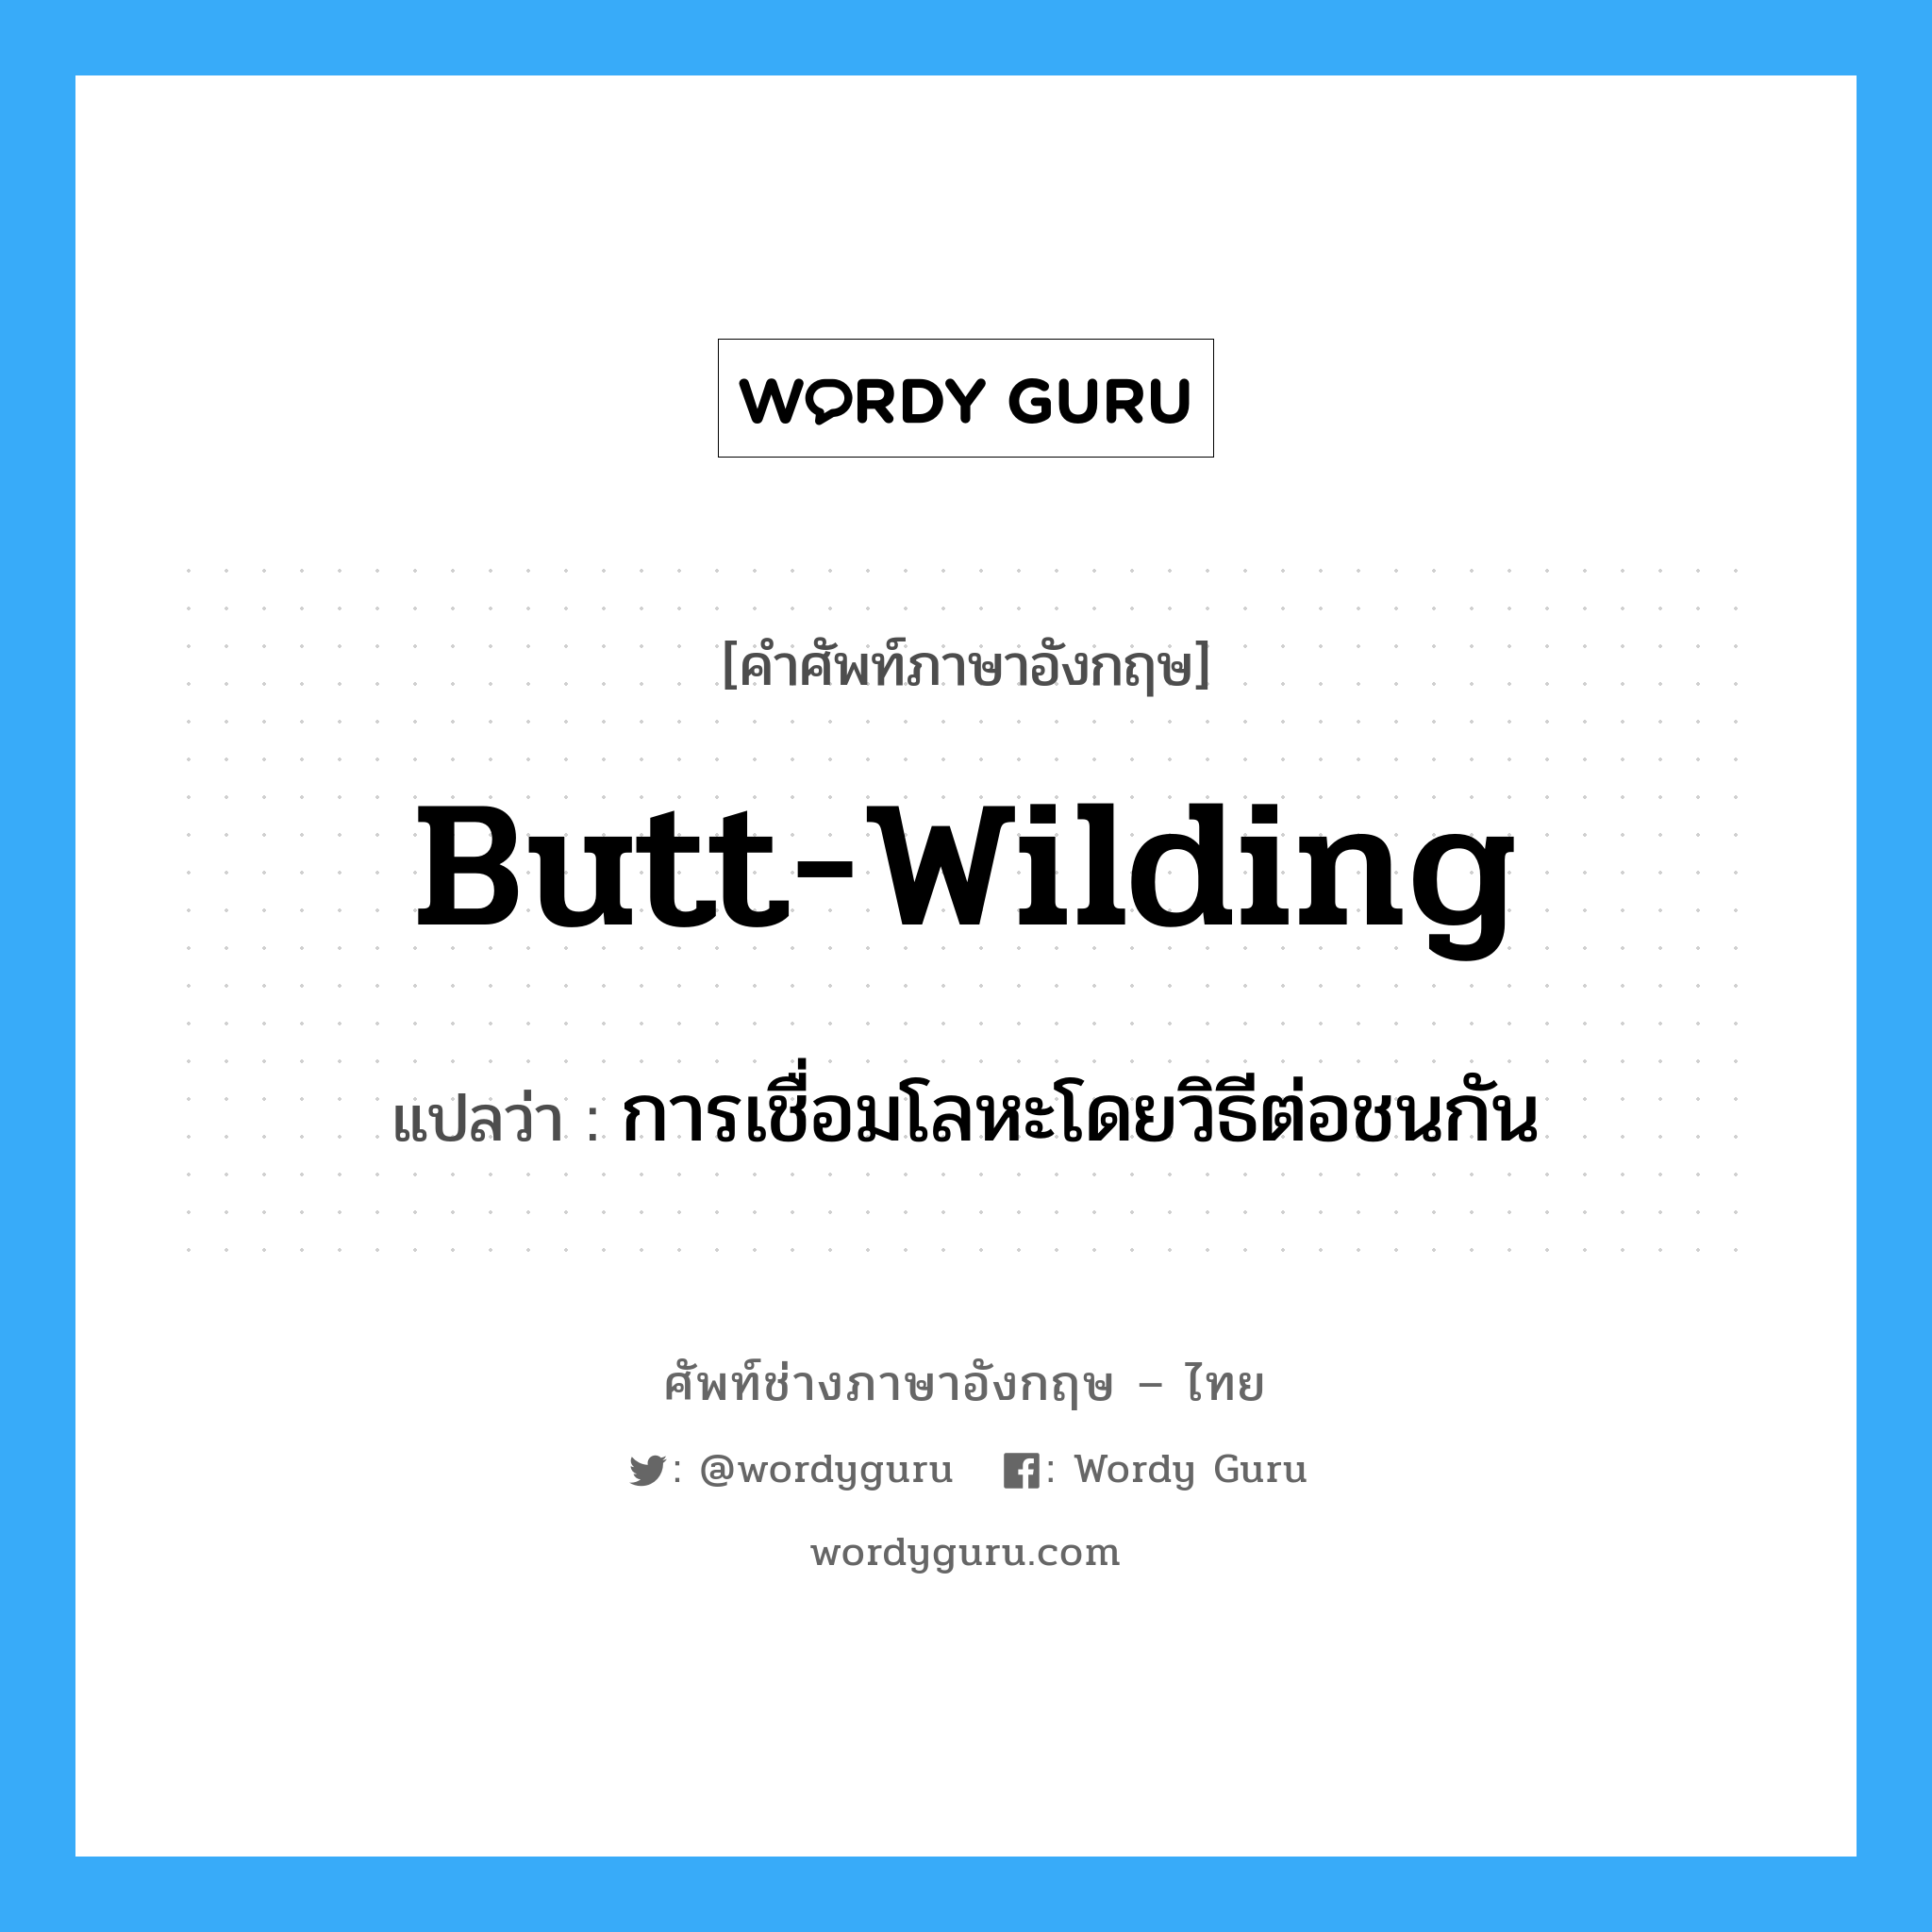 butt-wilding แปลว่า?, คำศัพท์ช่างภาษาอังกฤษ - ไทย butt-wilding คำศัพท์ภาษาอังกฤษ butt-wilding แปลว่า การเชื่อมโลหะโดยวิธีต่อชนกัน